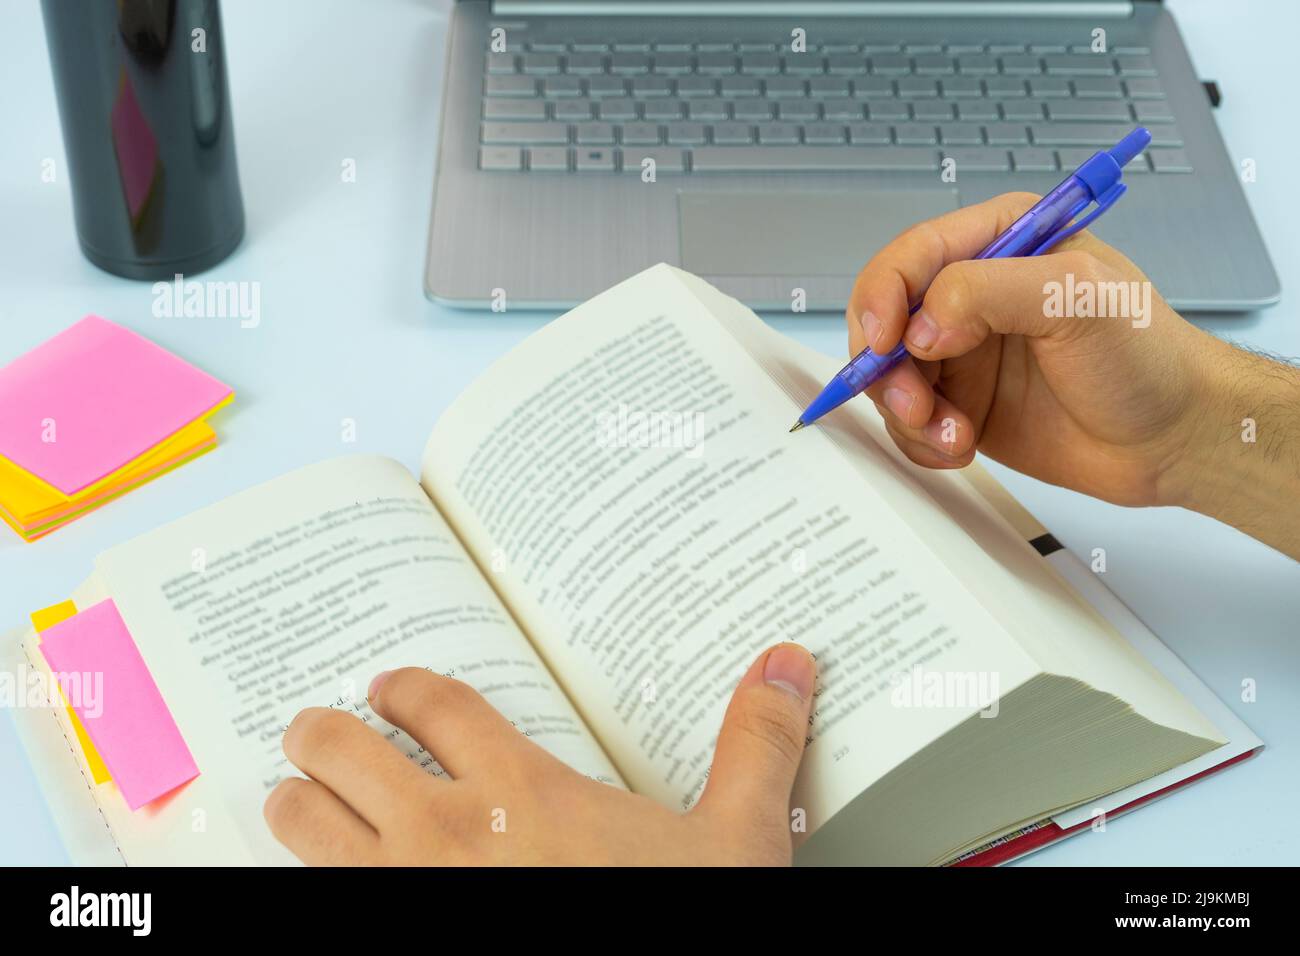 Laptop und offenes Buch mit violettem Bleistift isoliert auf weißem Hintergrund, Studium und Arbeitskonzept, konzentrieren sich auf das Lesen, Notizen machen, sitzende Ansicht Stockfoto